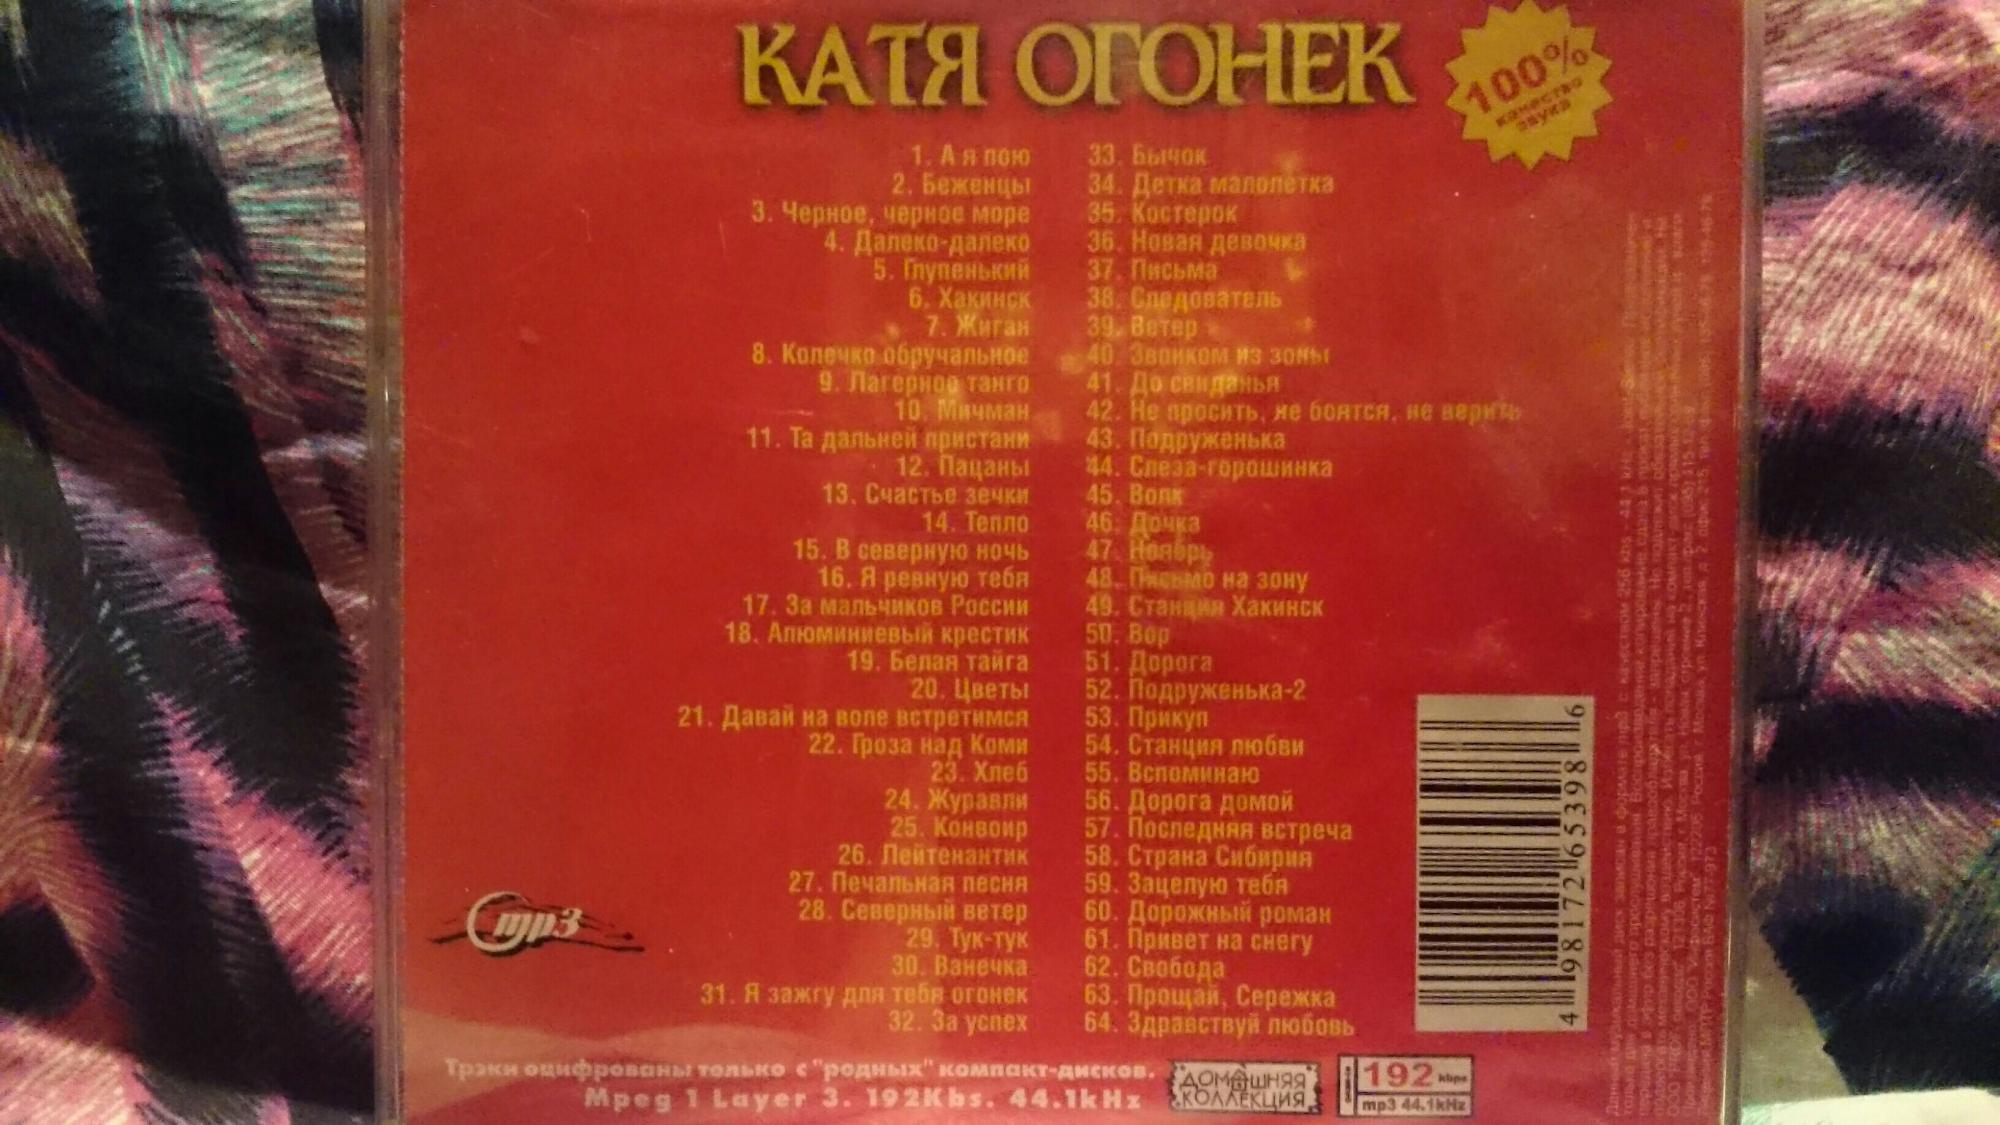 Катя огонёк дебютный альбом